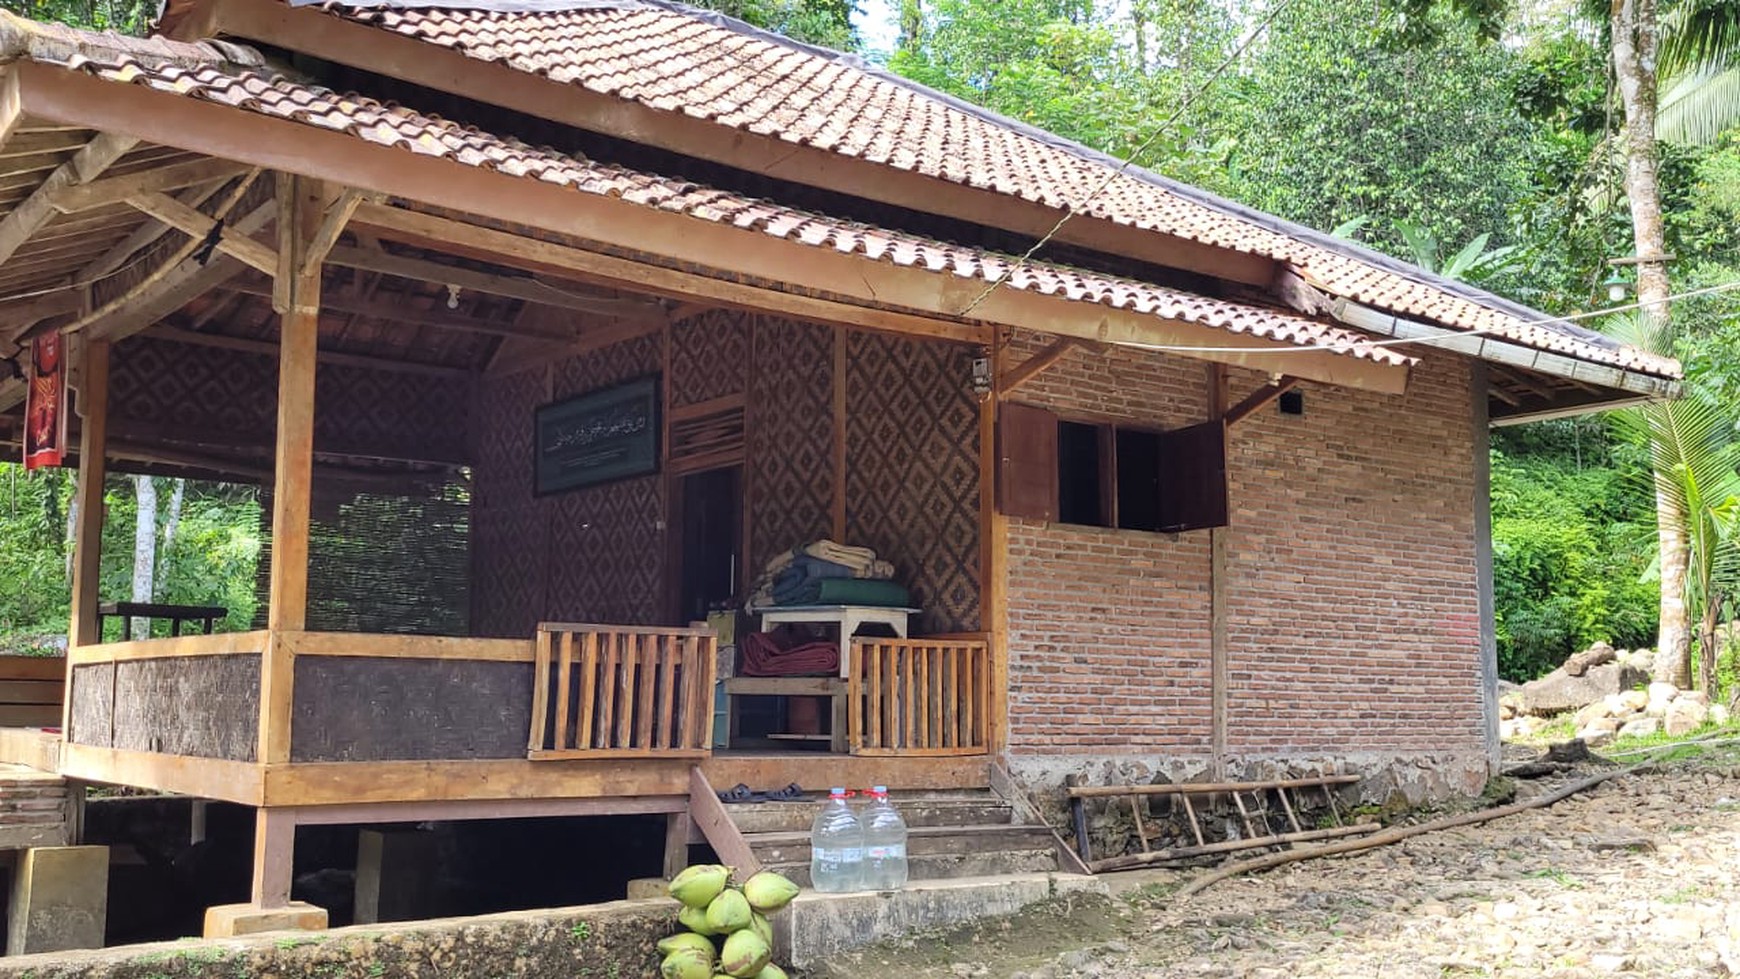 Kavling Cocok untuk Resort dan Terdapat 2 Bangunan Rumah Kayu @Pulosari, Pandeglang